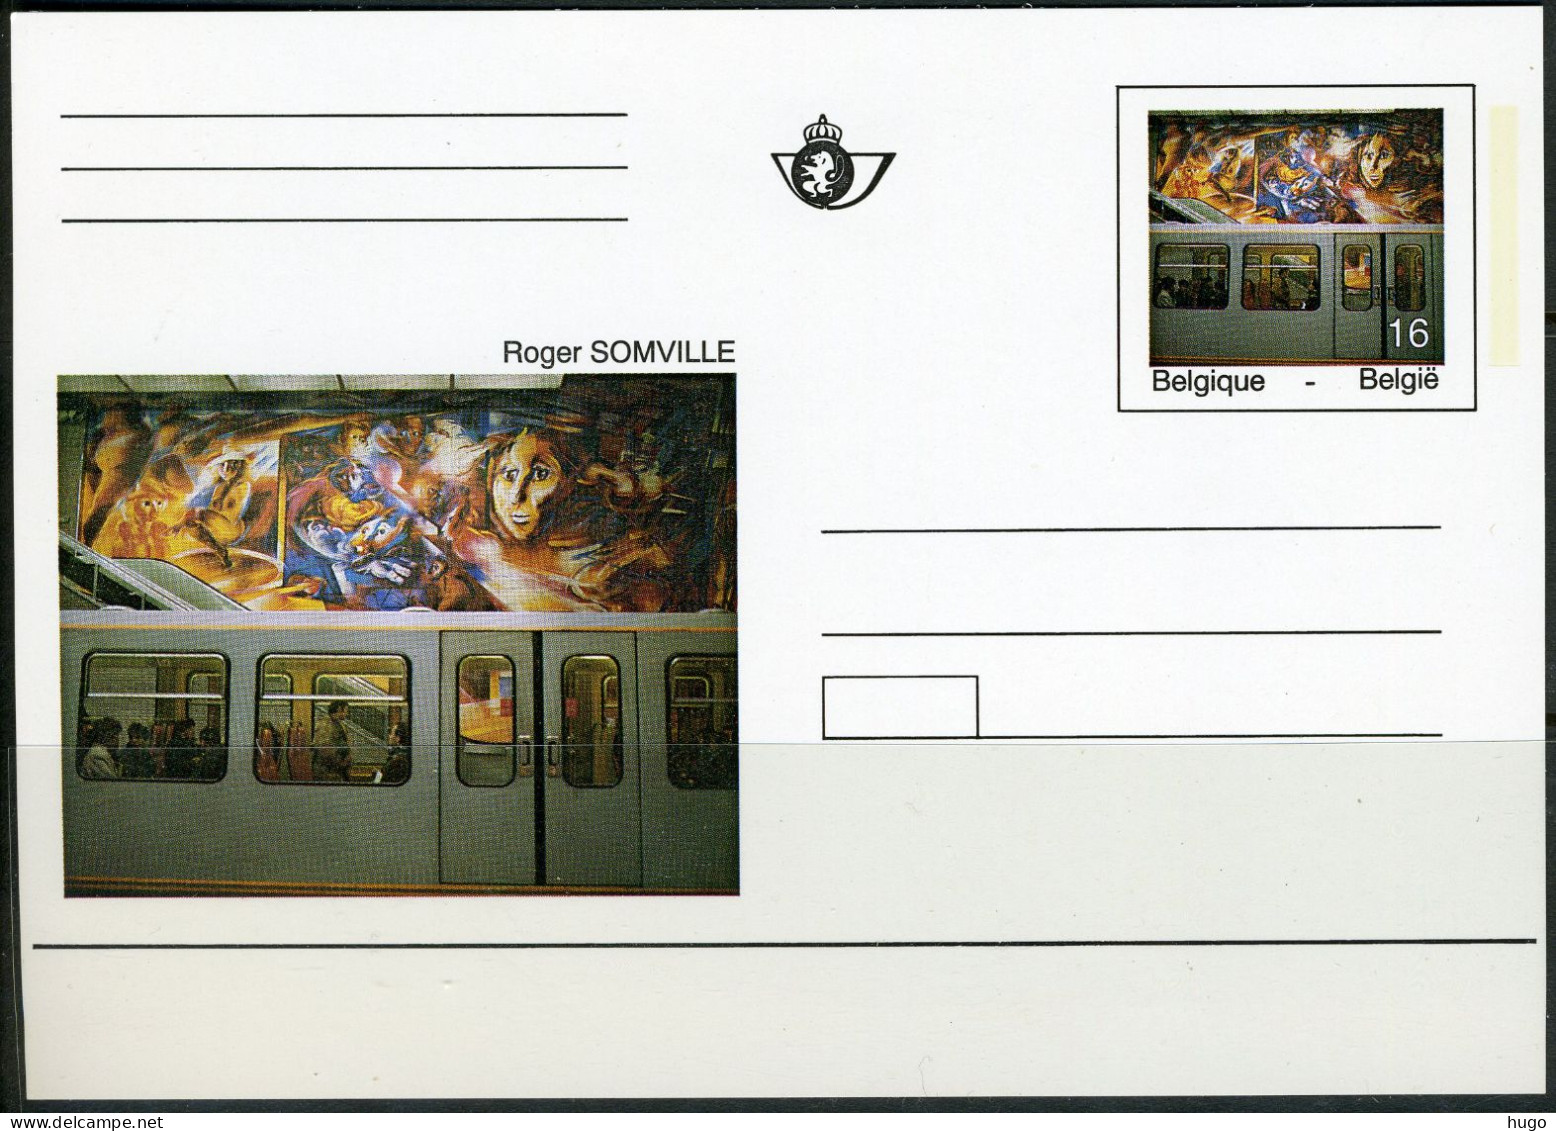 (B) BK46 1994 - Kunstwerken Uit De Brusselse Metro - Illustrierte Postkarten (1971-2014) [BK]